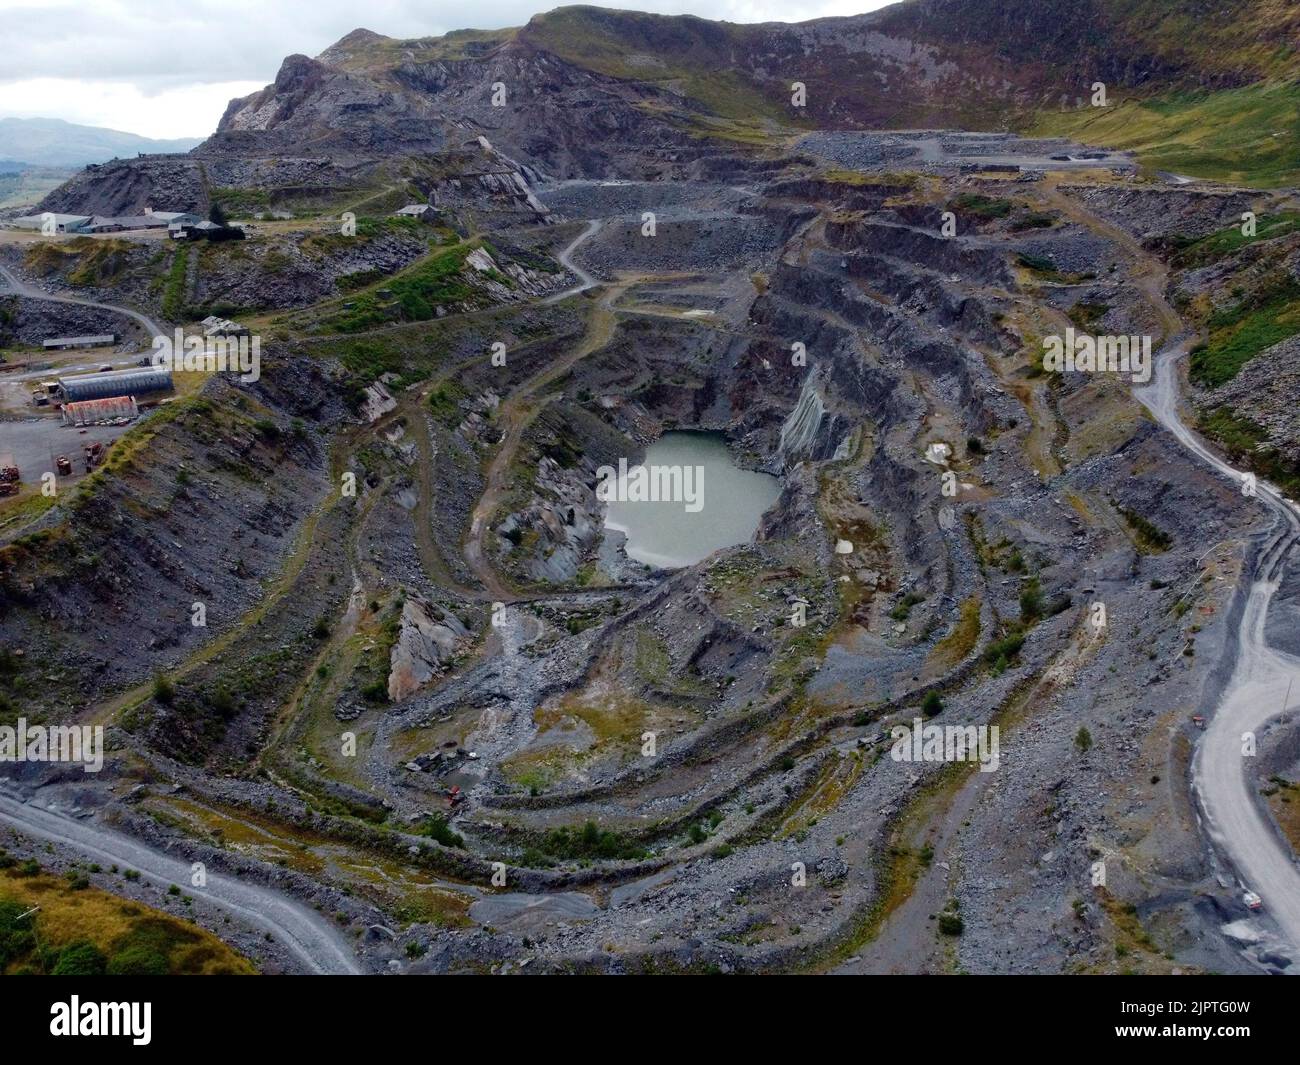 Vue aérienne d'une mine d'ardoise à Blaenau Ffestiniog, dans le nord du pays de Galles. Banque D'Images